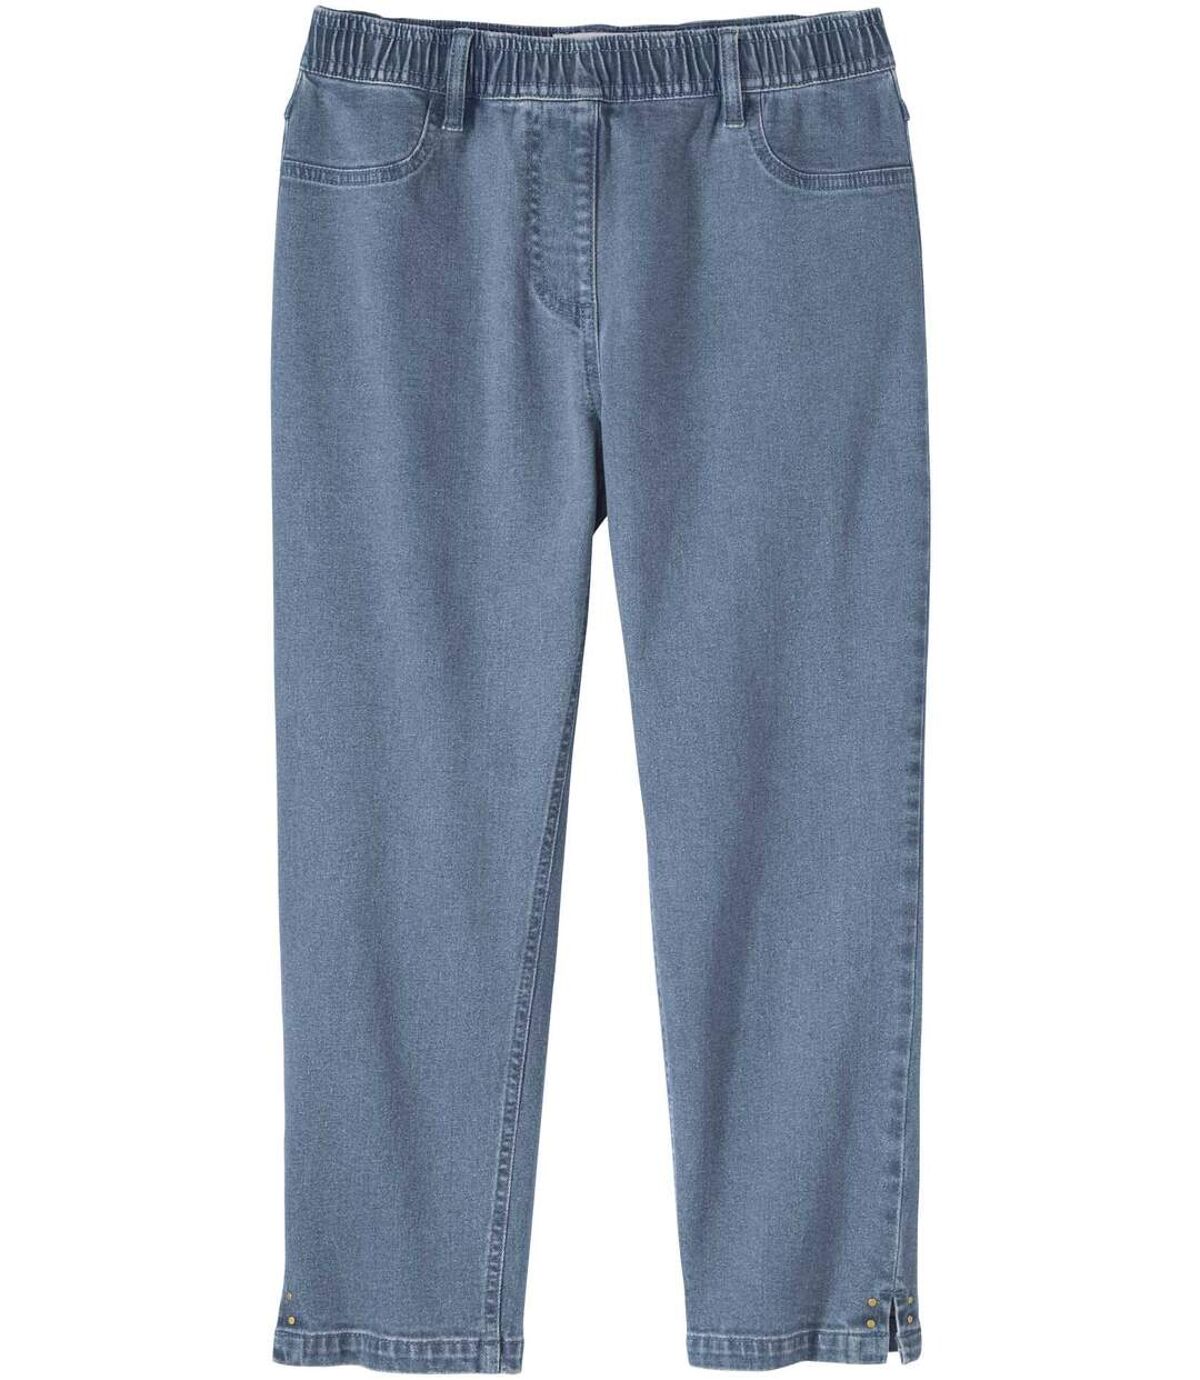 Jegginsy 7/8 z jeansu ze stretchem i nitami Atlas For Men